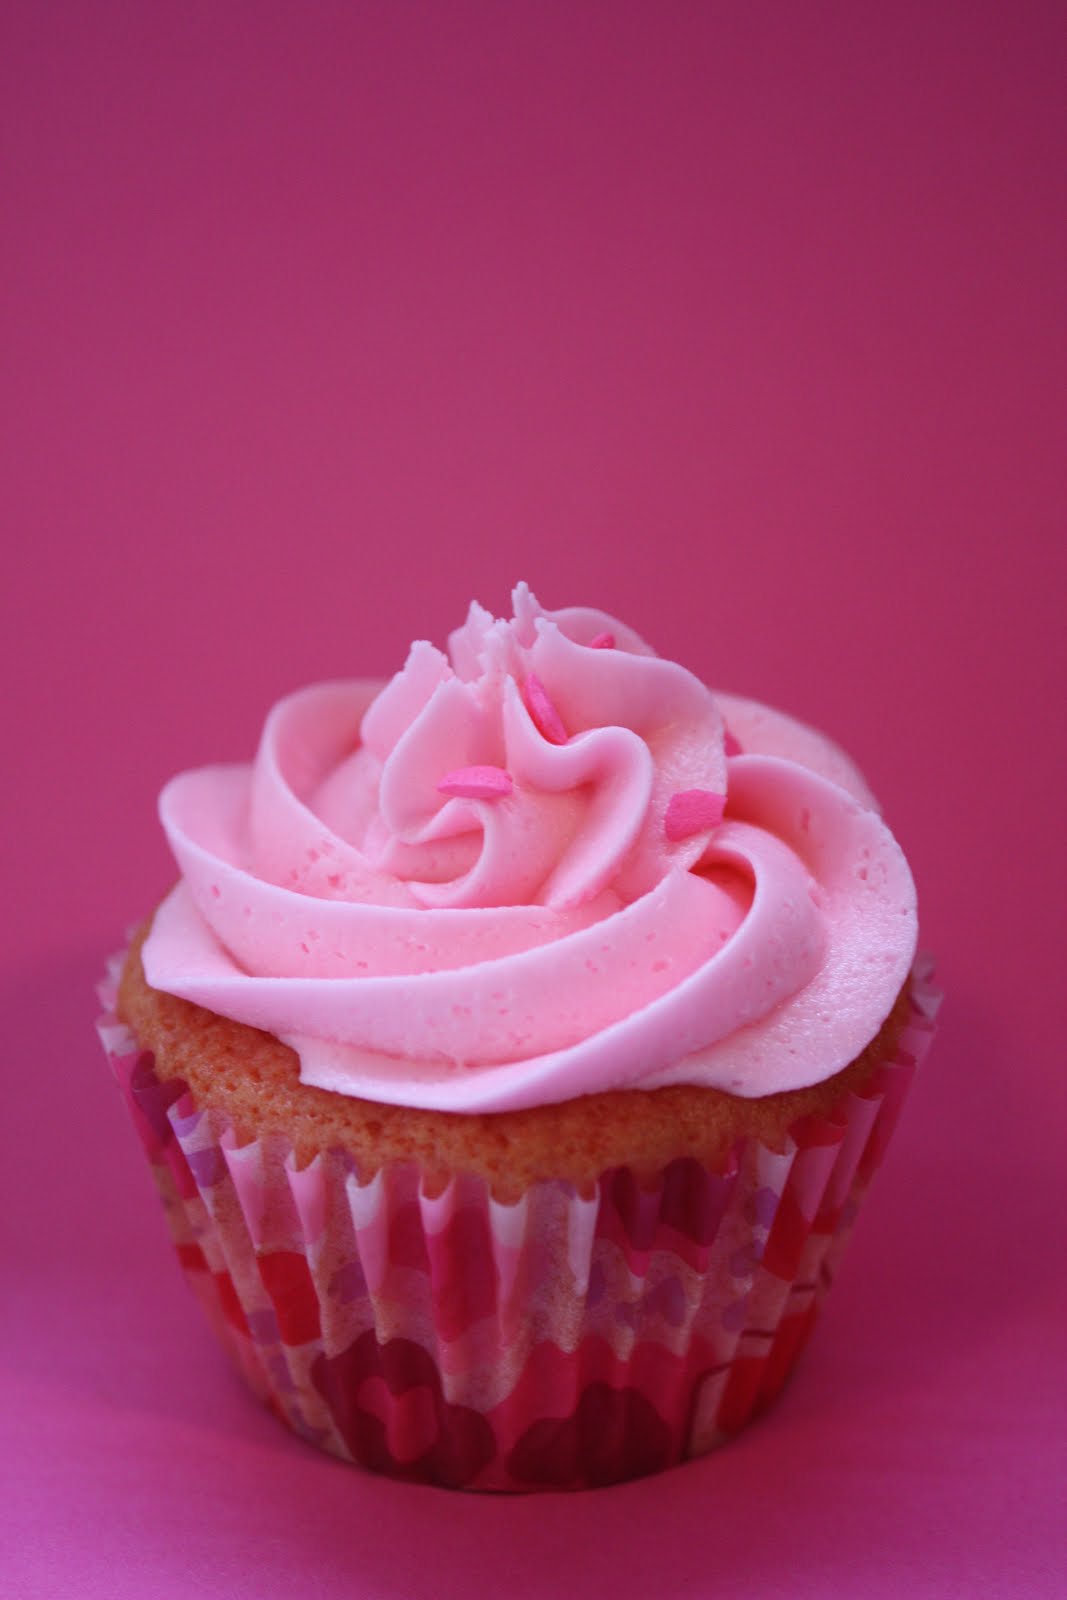 http://2.bp.blogspot.com/_pApZUaFgO_A/S9TGtyfcLaI/AAAAAAAAAHI/eBR0dlQLKds/s1600/Pink+Lemonade+Cupcake.jpg